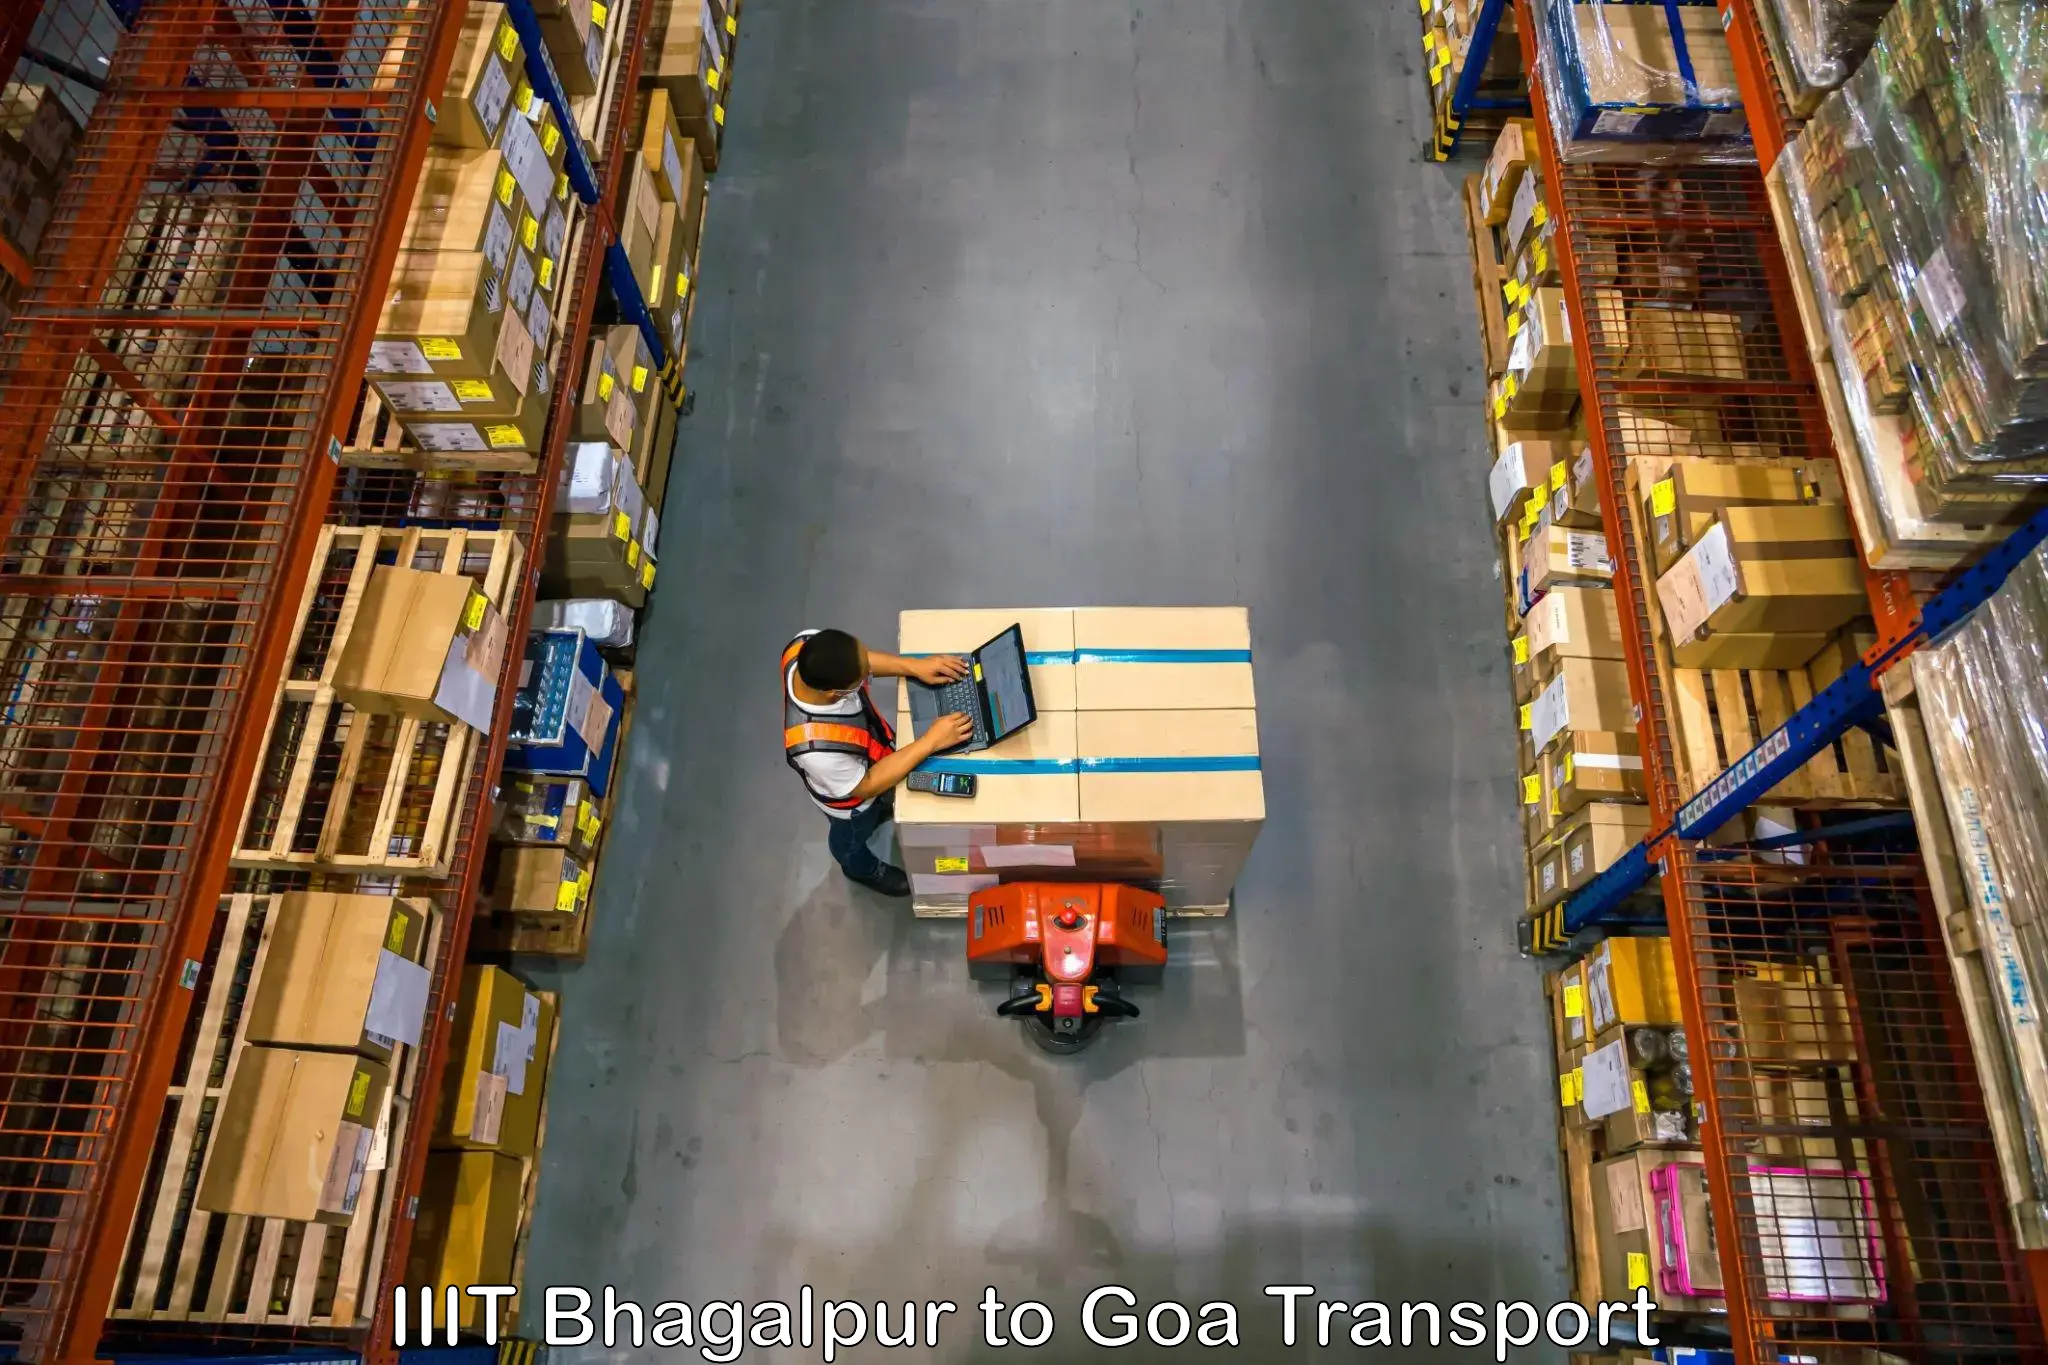 Cargo transportation services IIIT Bhagalpur to IIT Goa